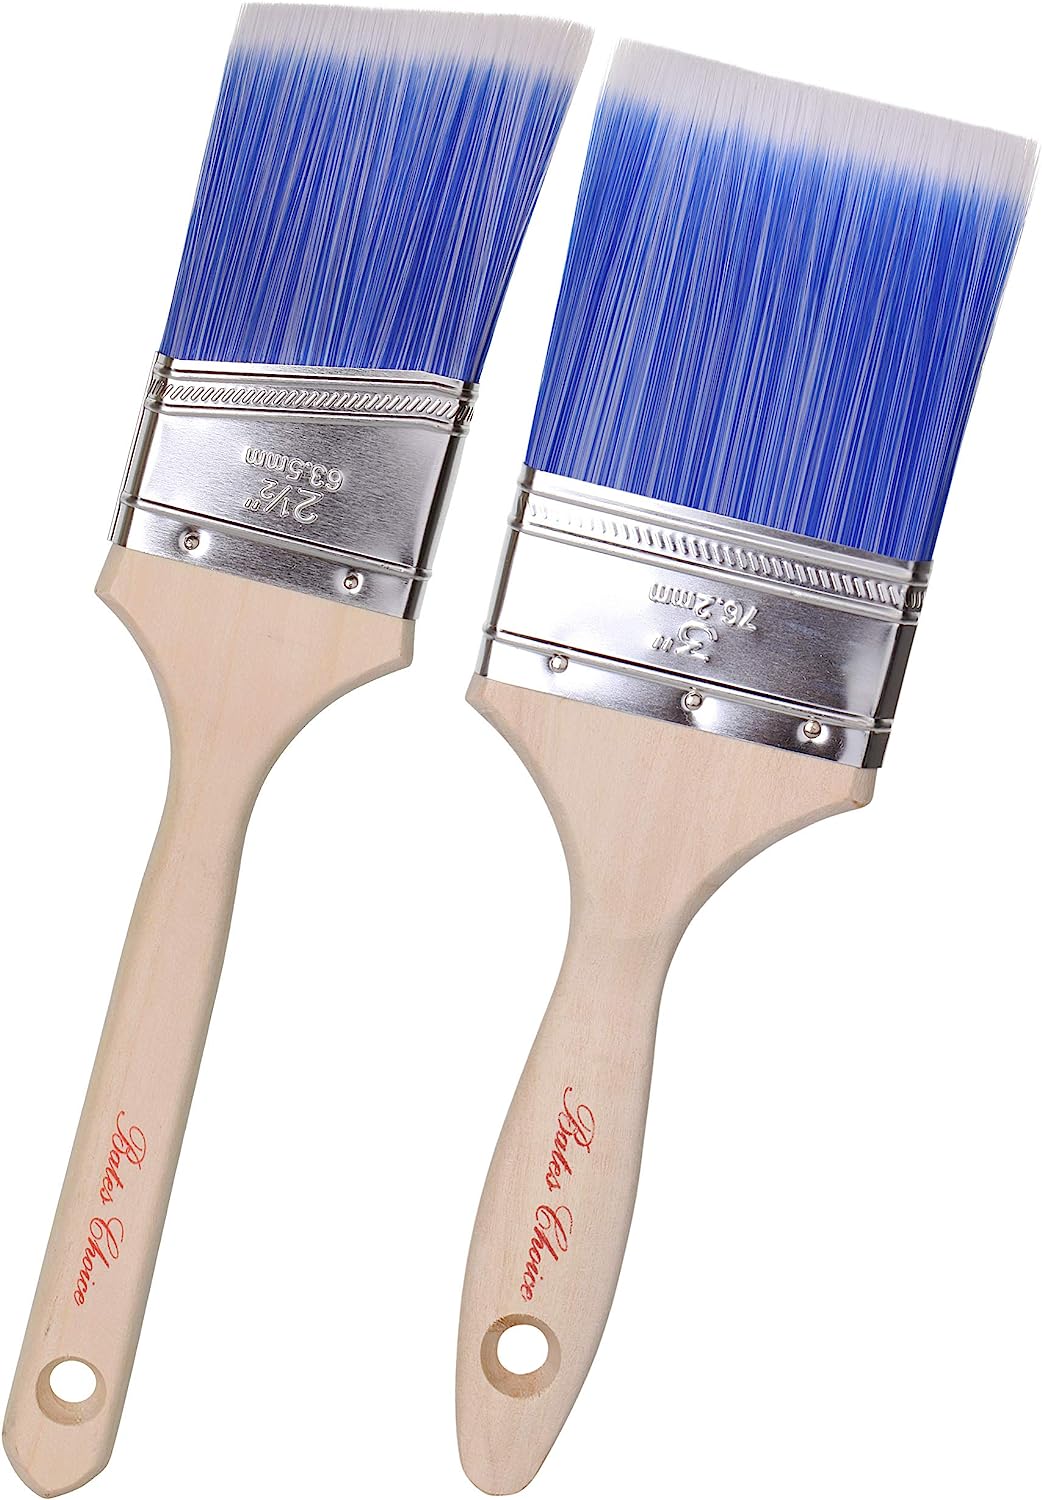 Bates - 2 Pack, Wood Handle, Paint Brushes Set, [...]